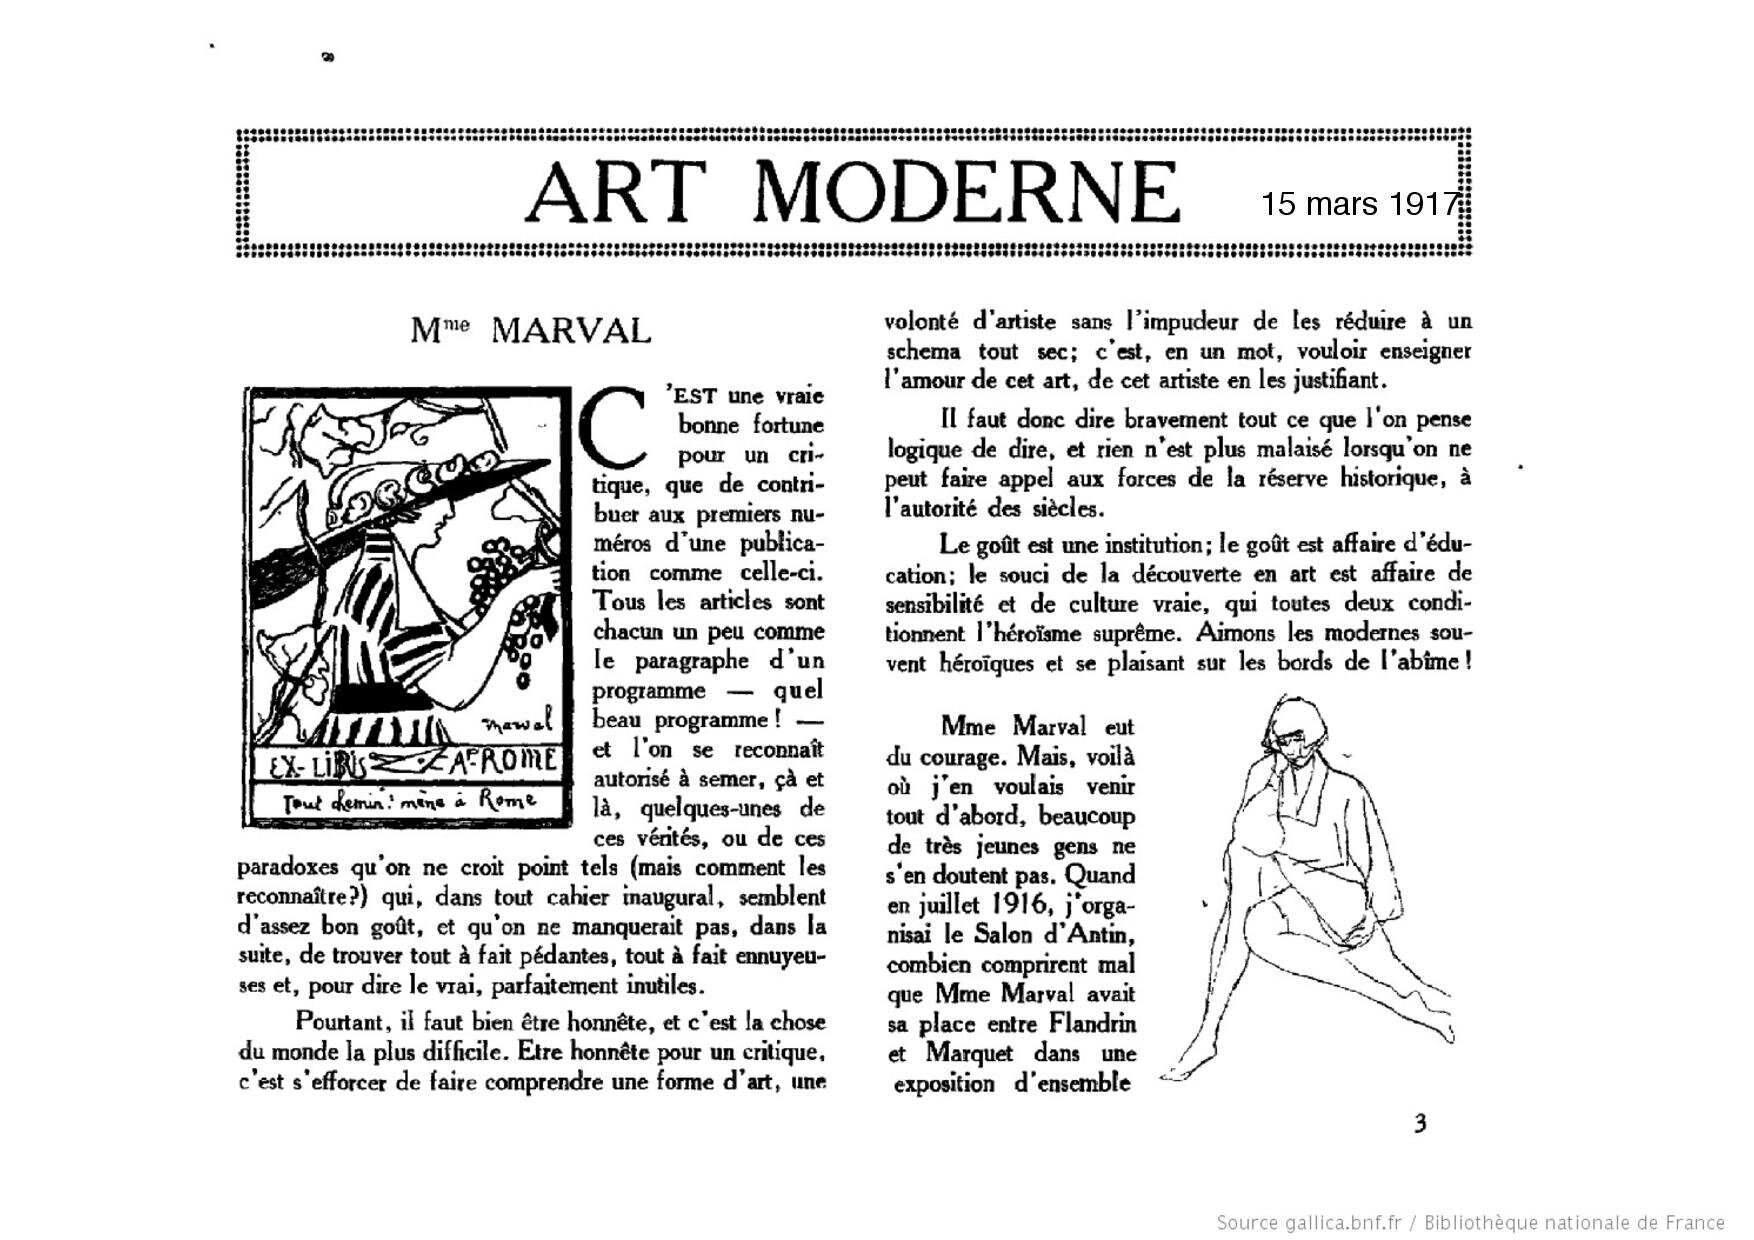 Le Carnet des Artistes, 15 mars 1917 (Copy)